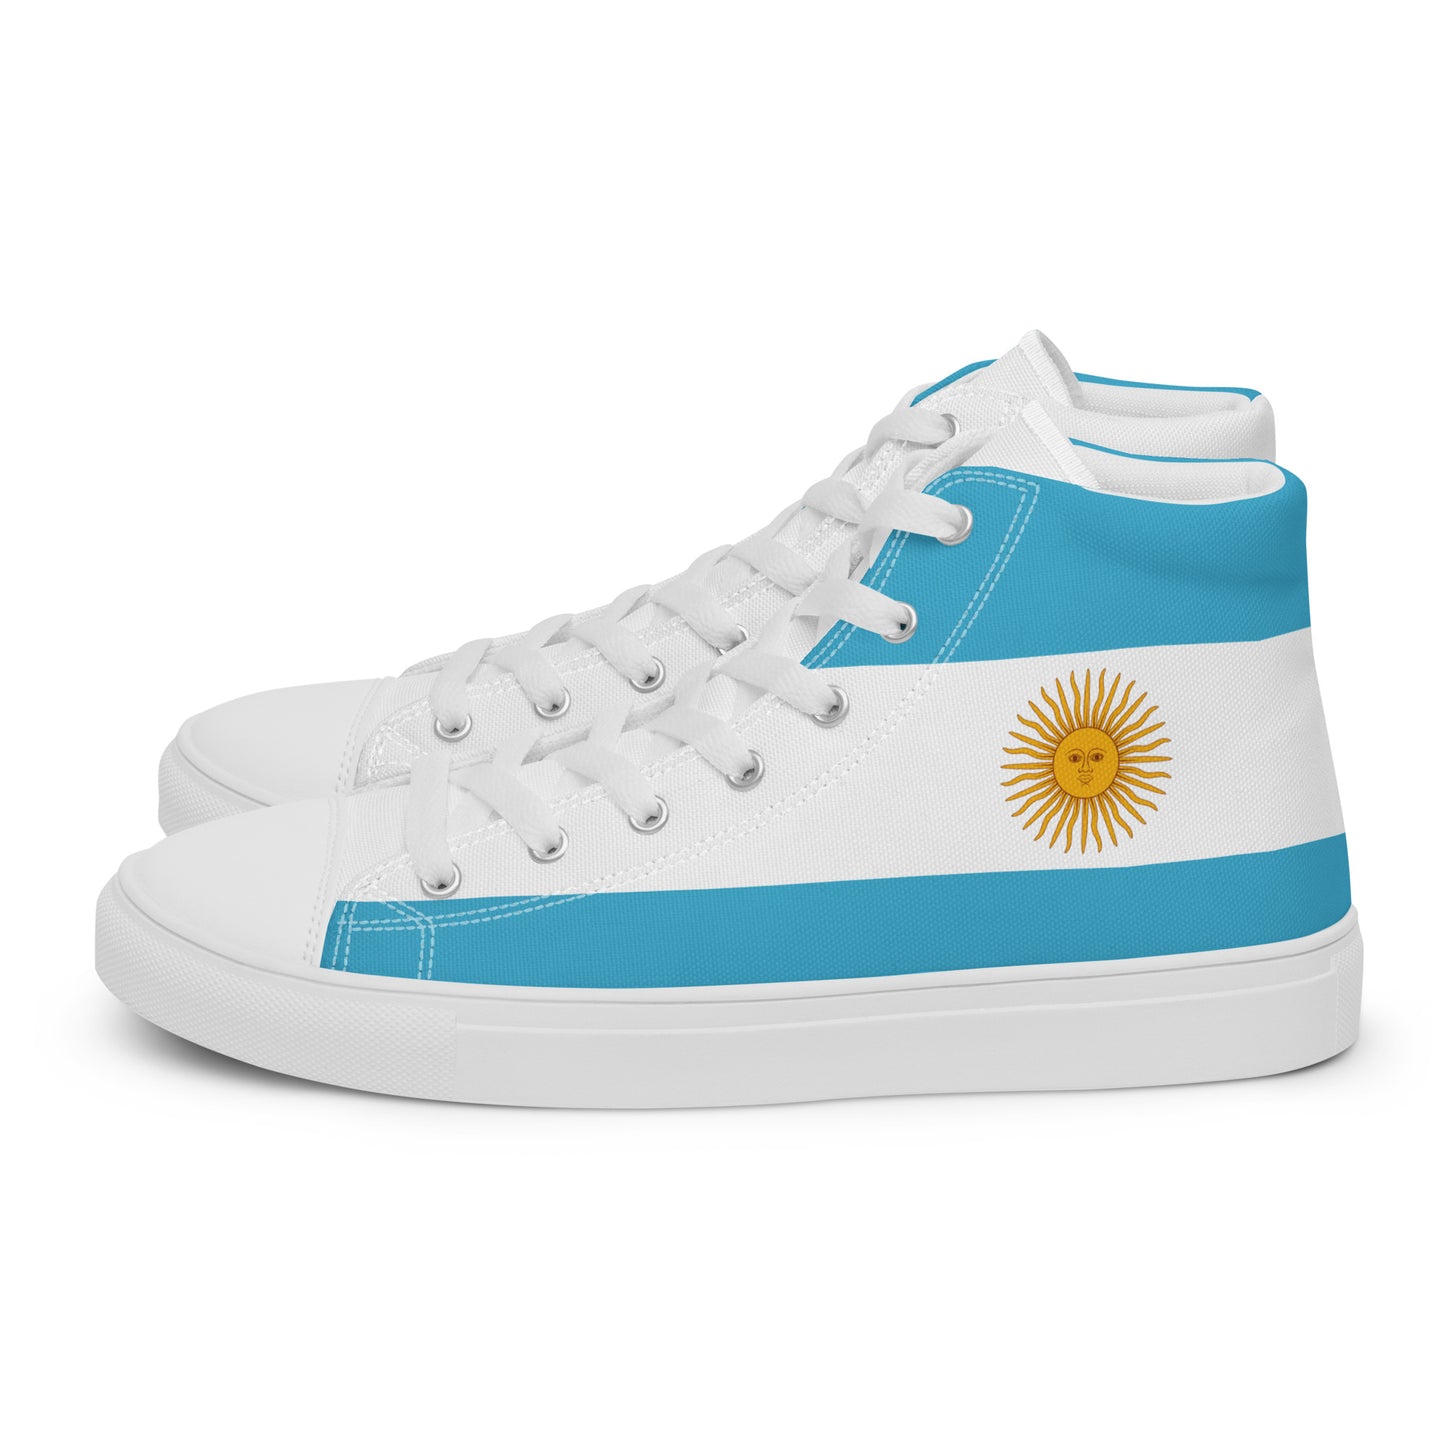 Argentina - Men - Bandera - High top shoes